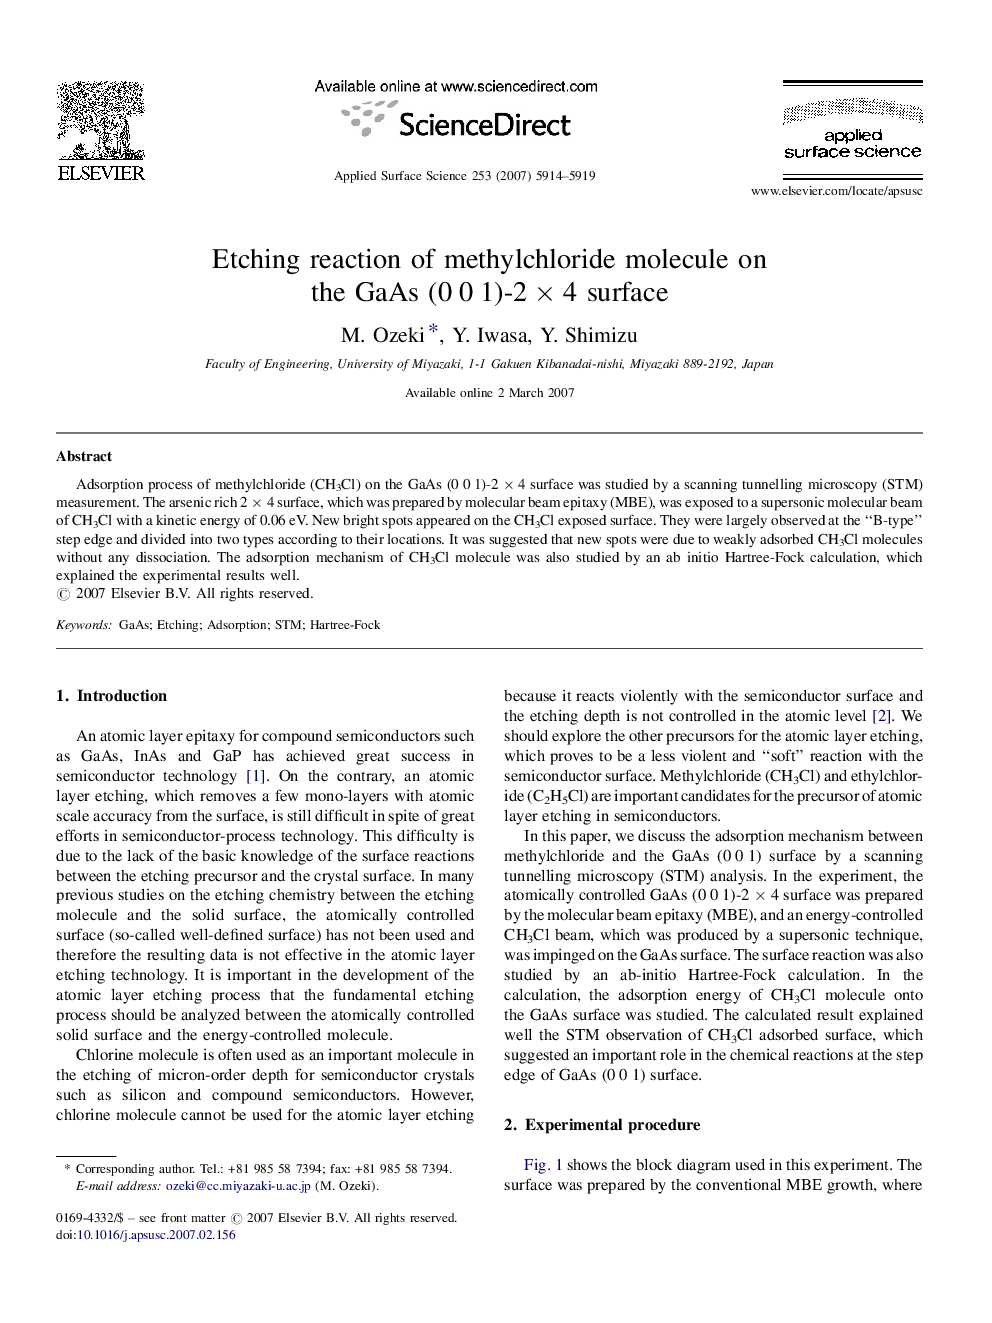 Etching reaction of methylchloride molecule on the GaAs (0 0 1)-2 Ã 4 surface